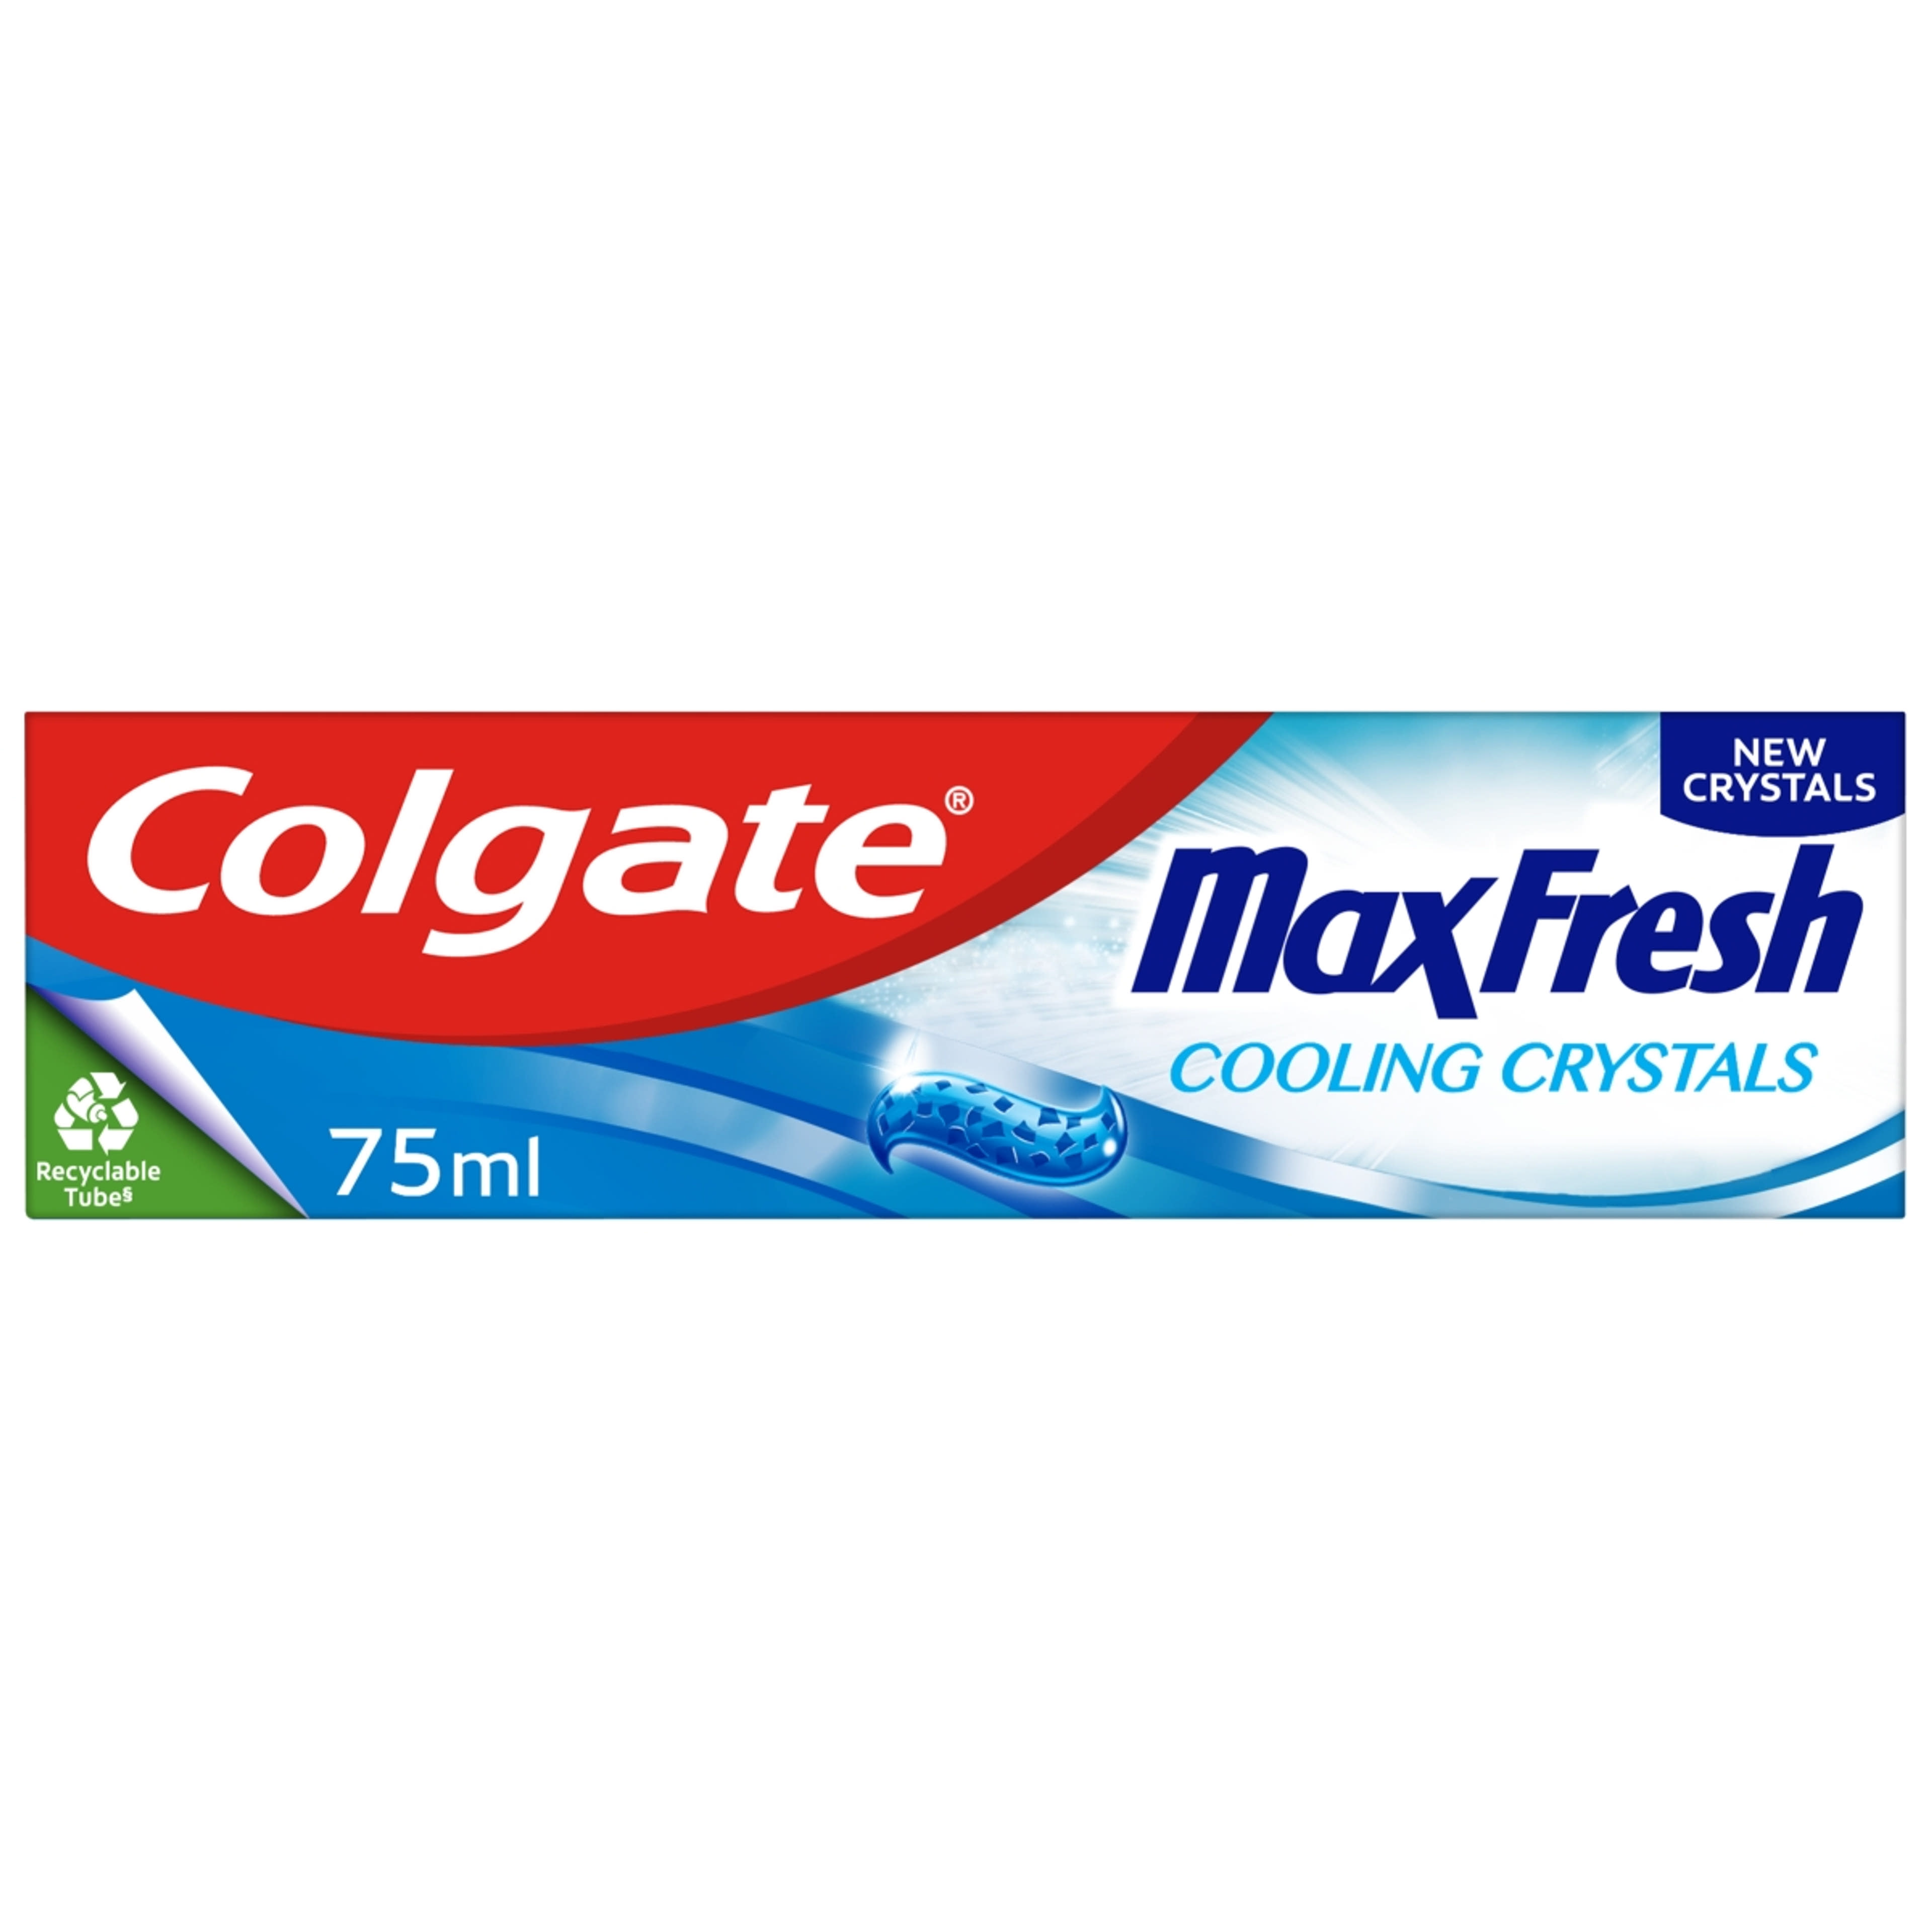 Colgate Max Fresh Cooling Crystals fogkrém - 75 ml-9